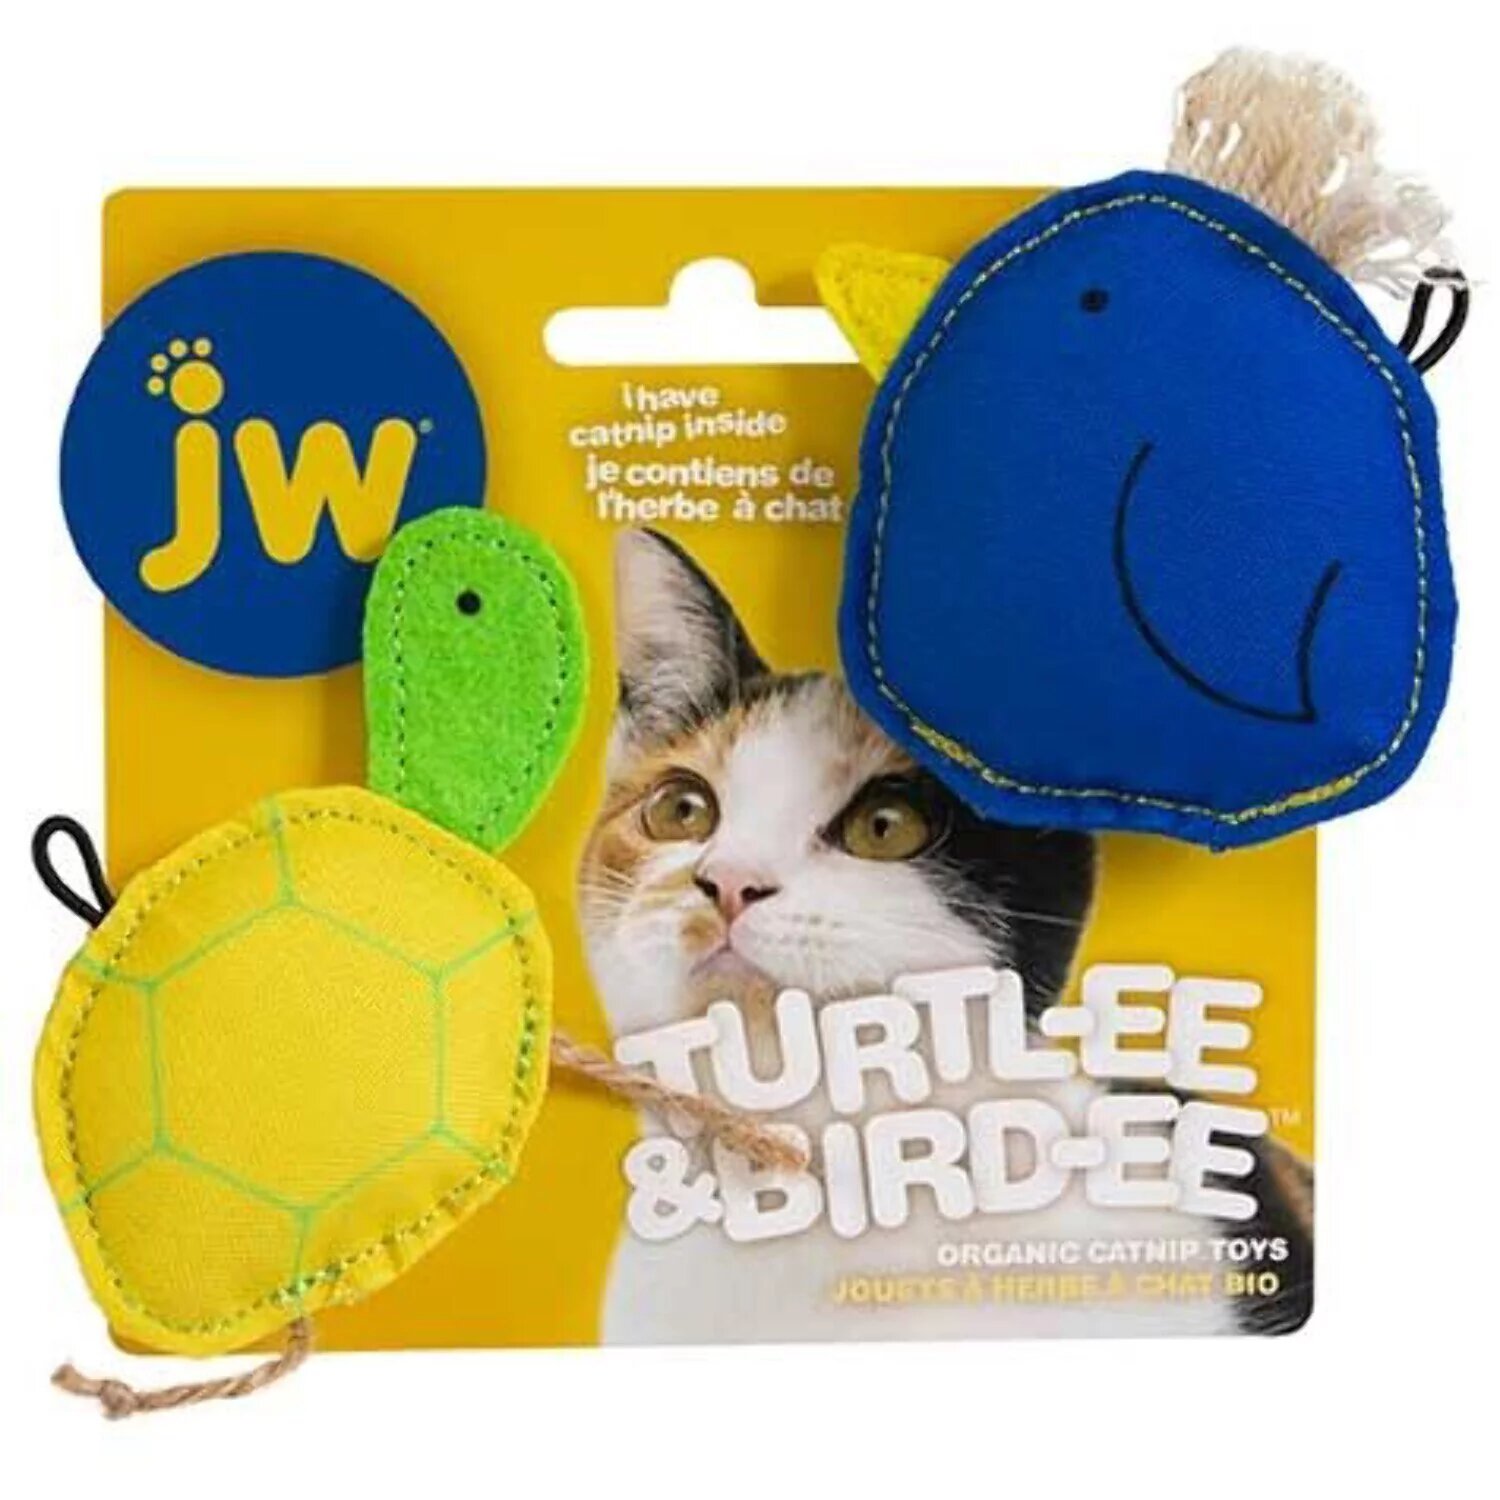 Jw Cat Bird-Ee & Turtl-Ee Catnip Combo